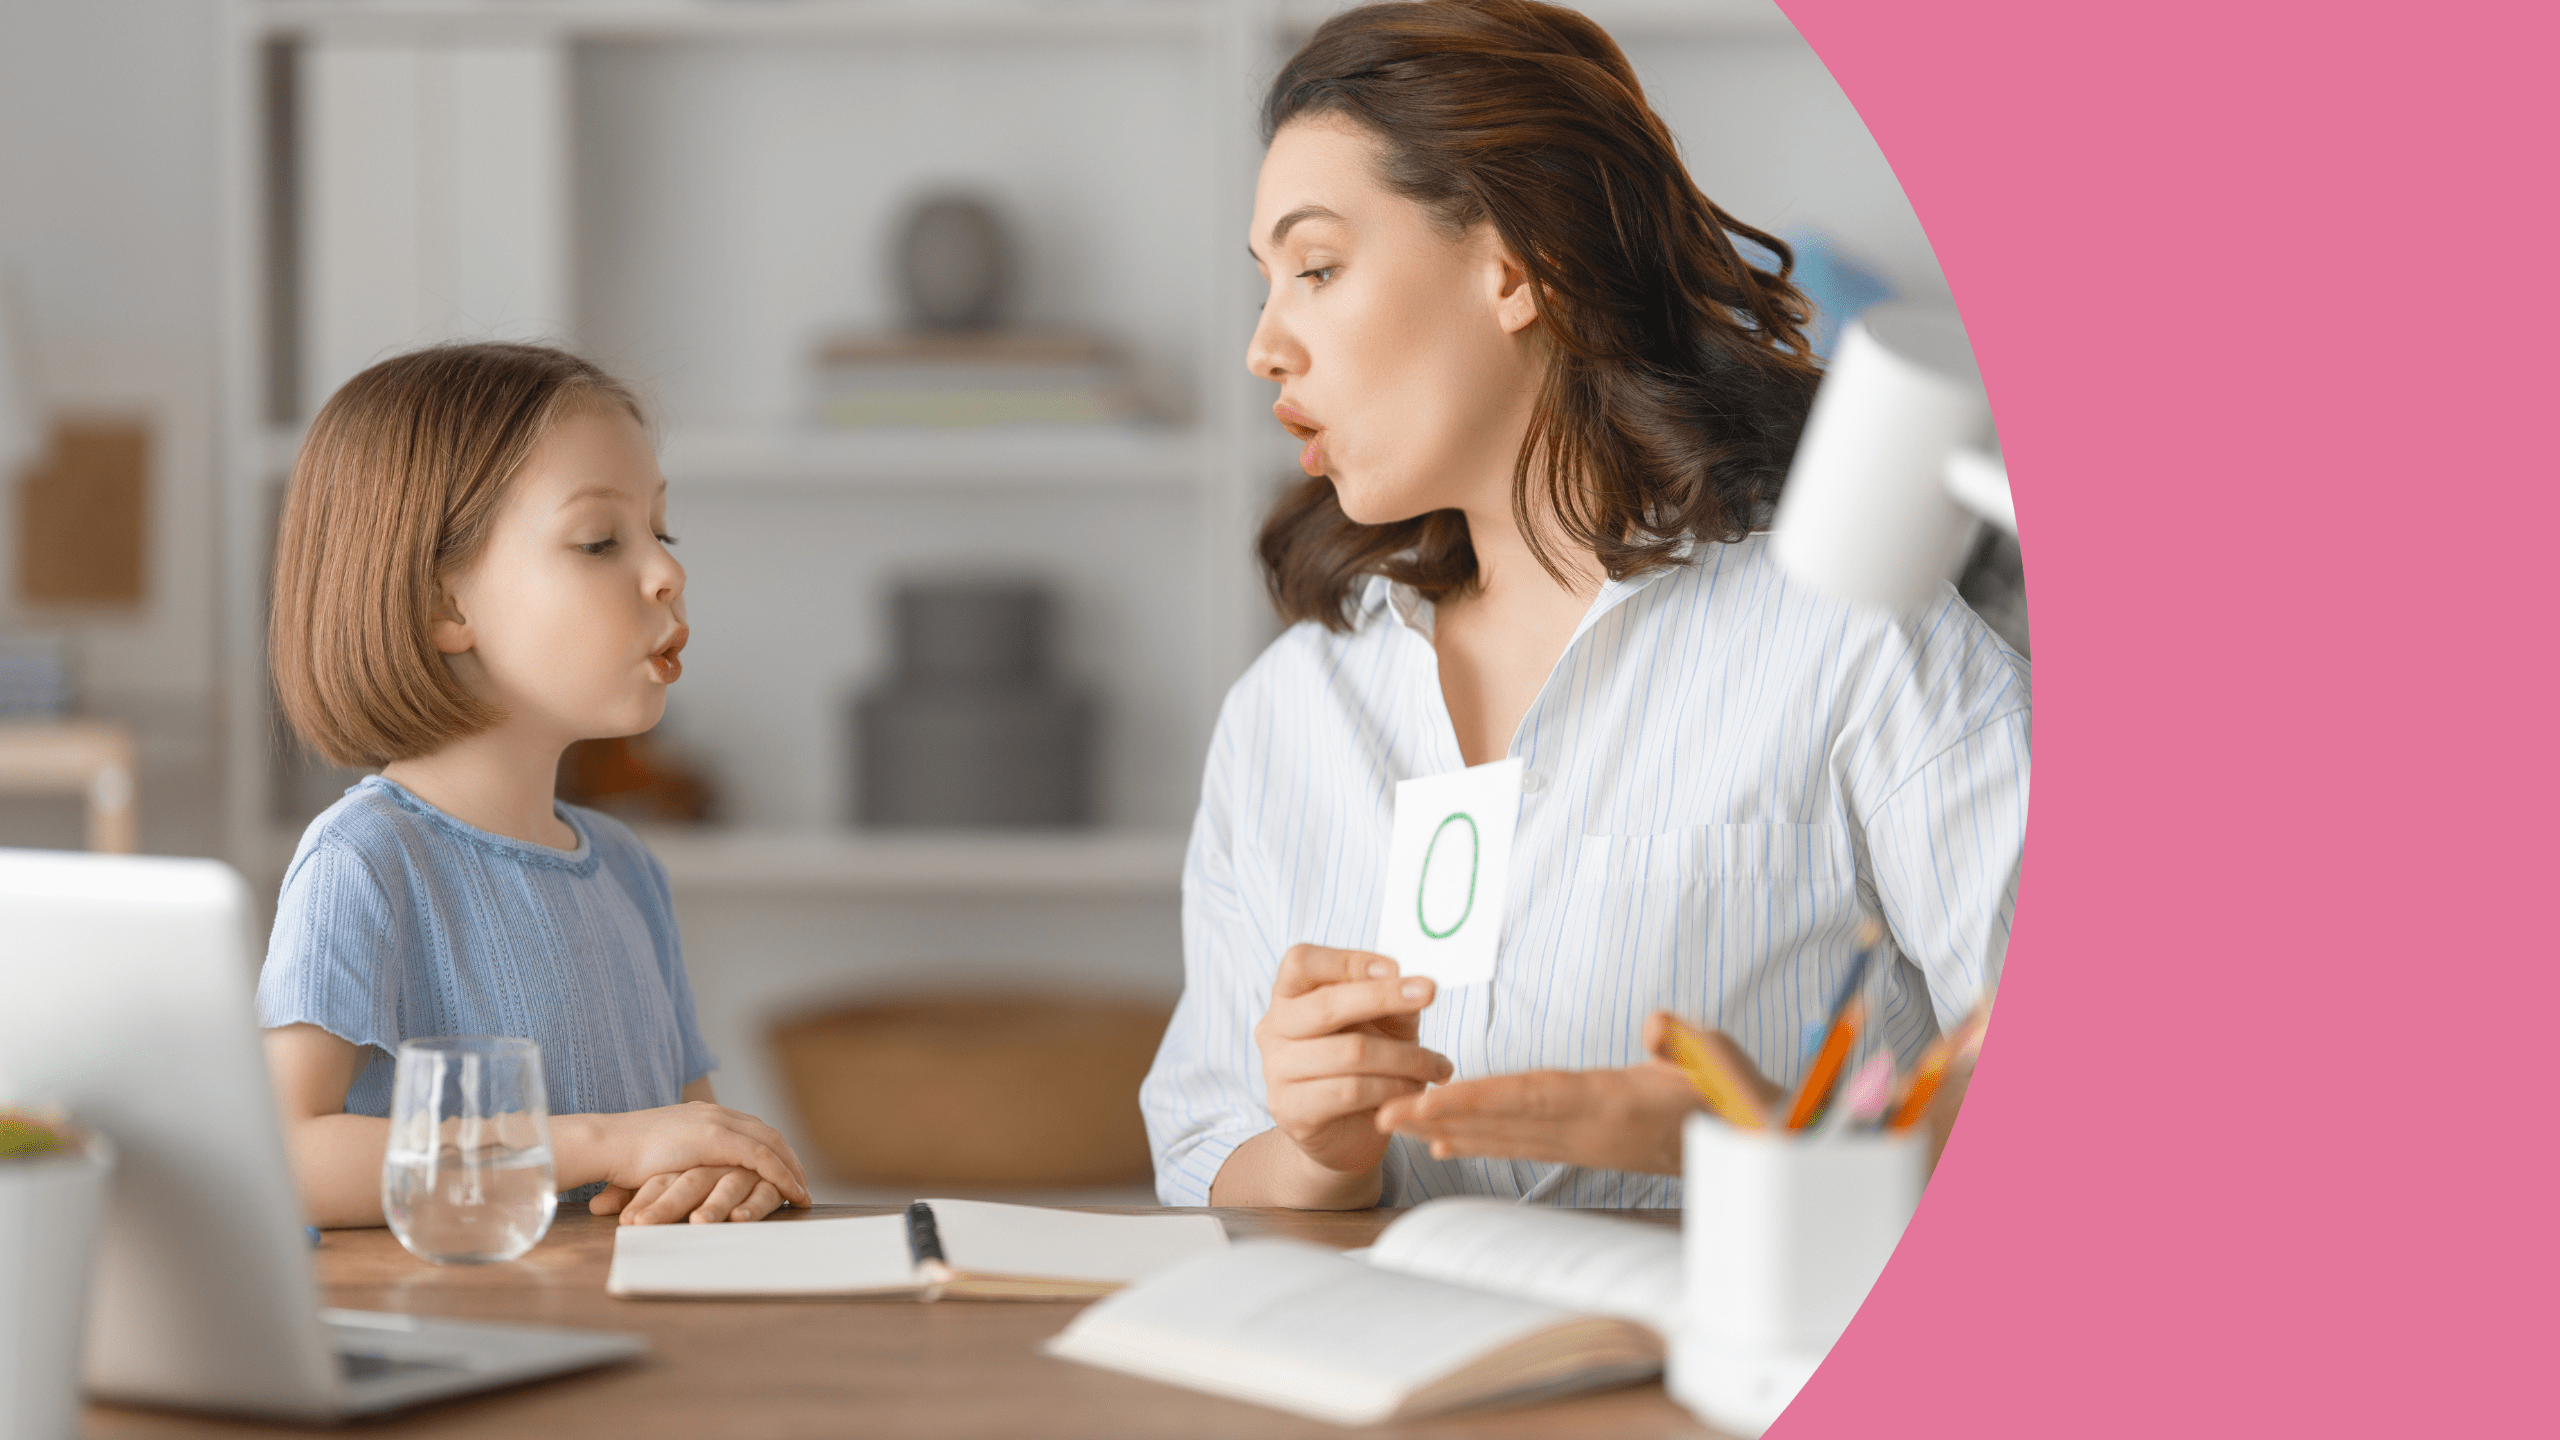 Autista na família: o que os pais e parentes precisam entender? – A Menina  Neurodiversa